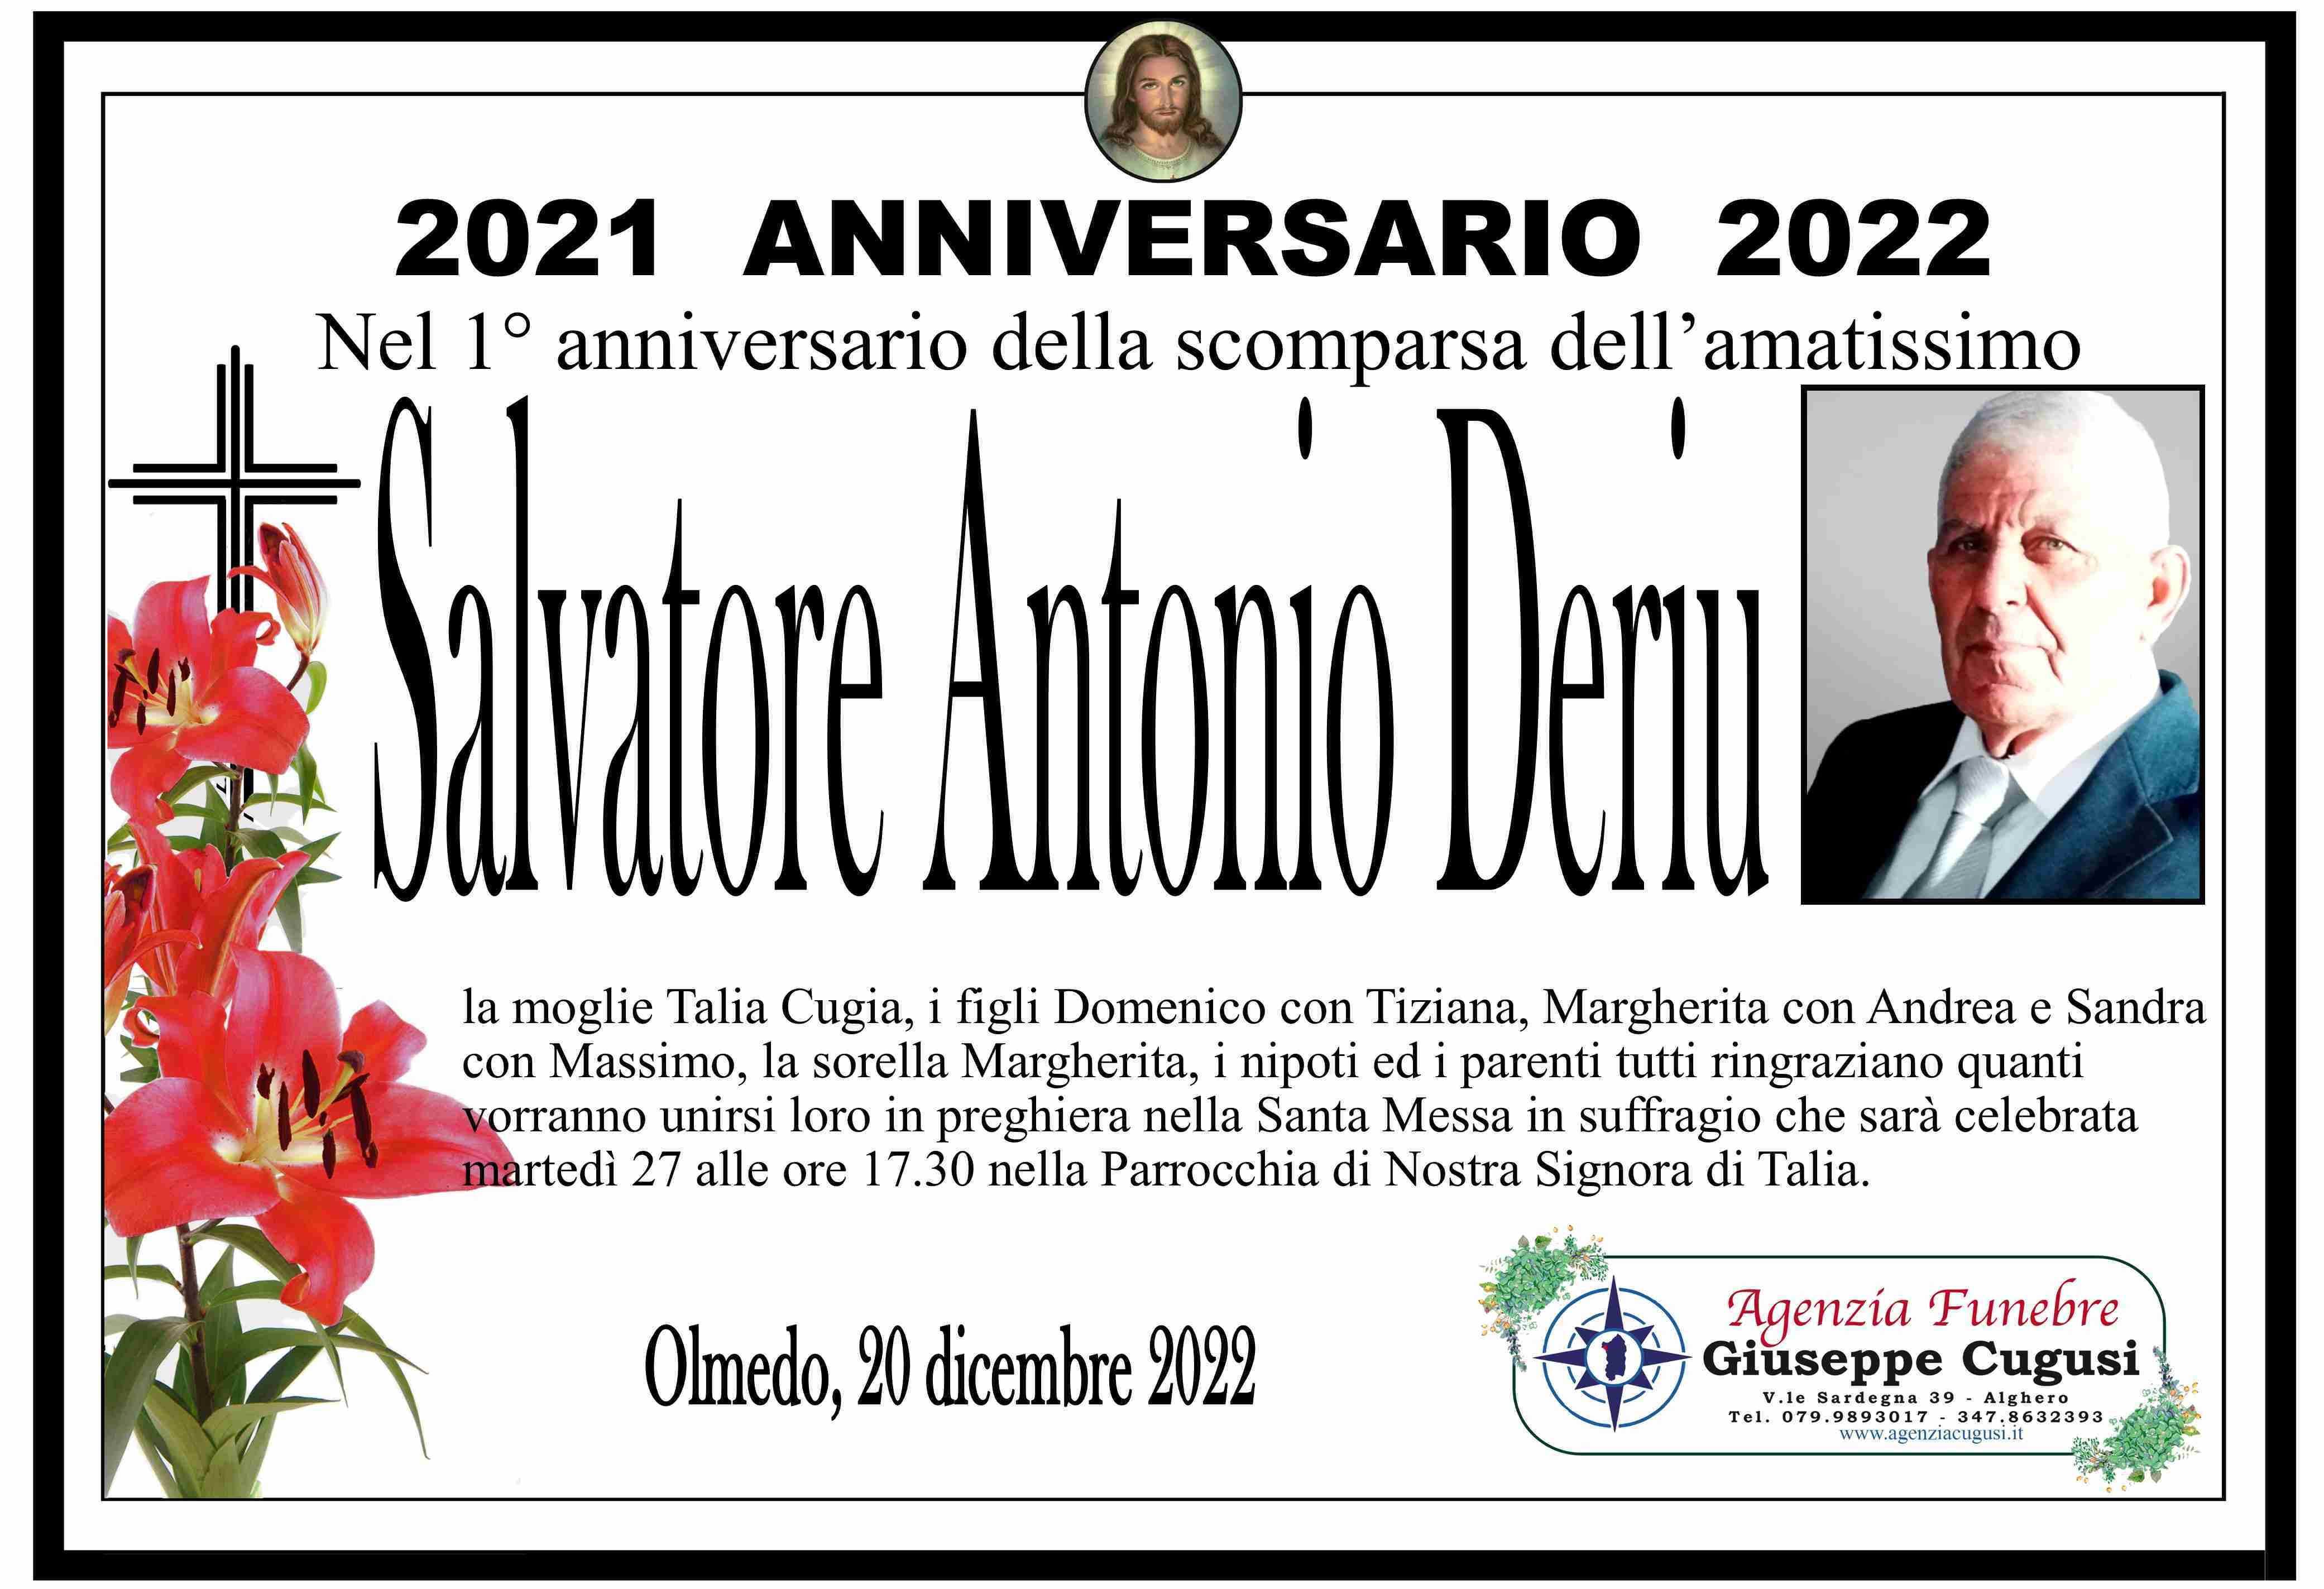 Salvatore Antonio Deriu